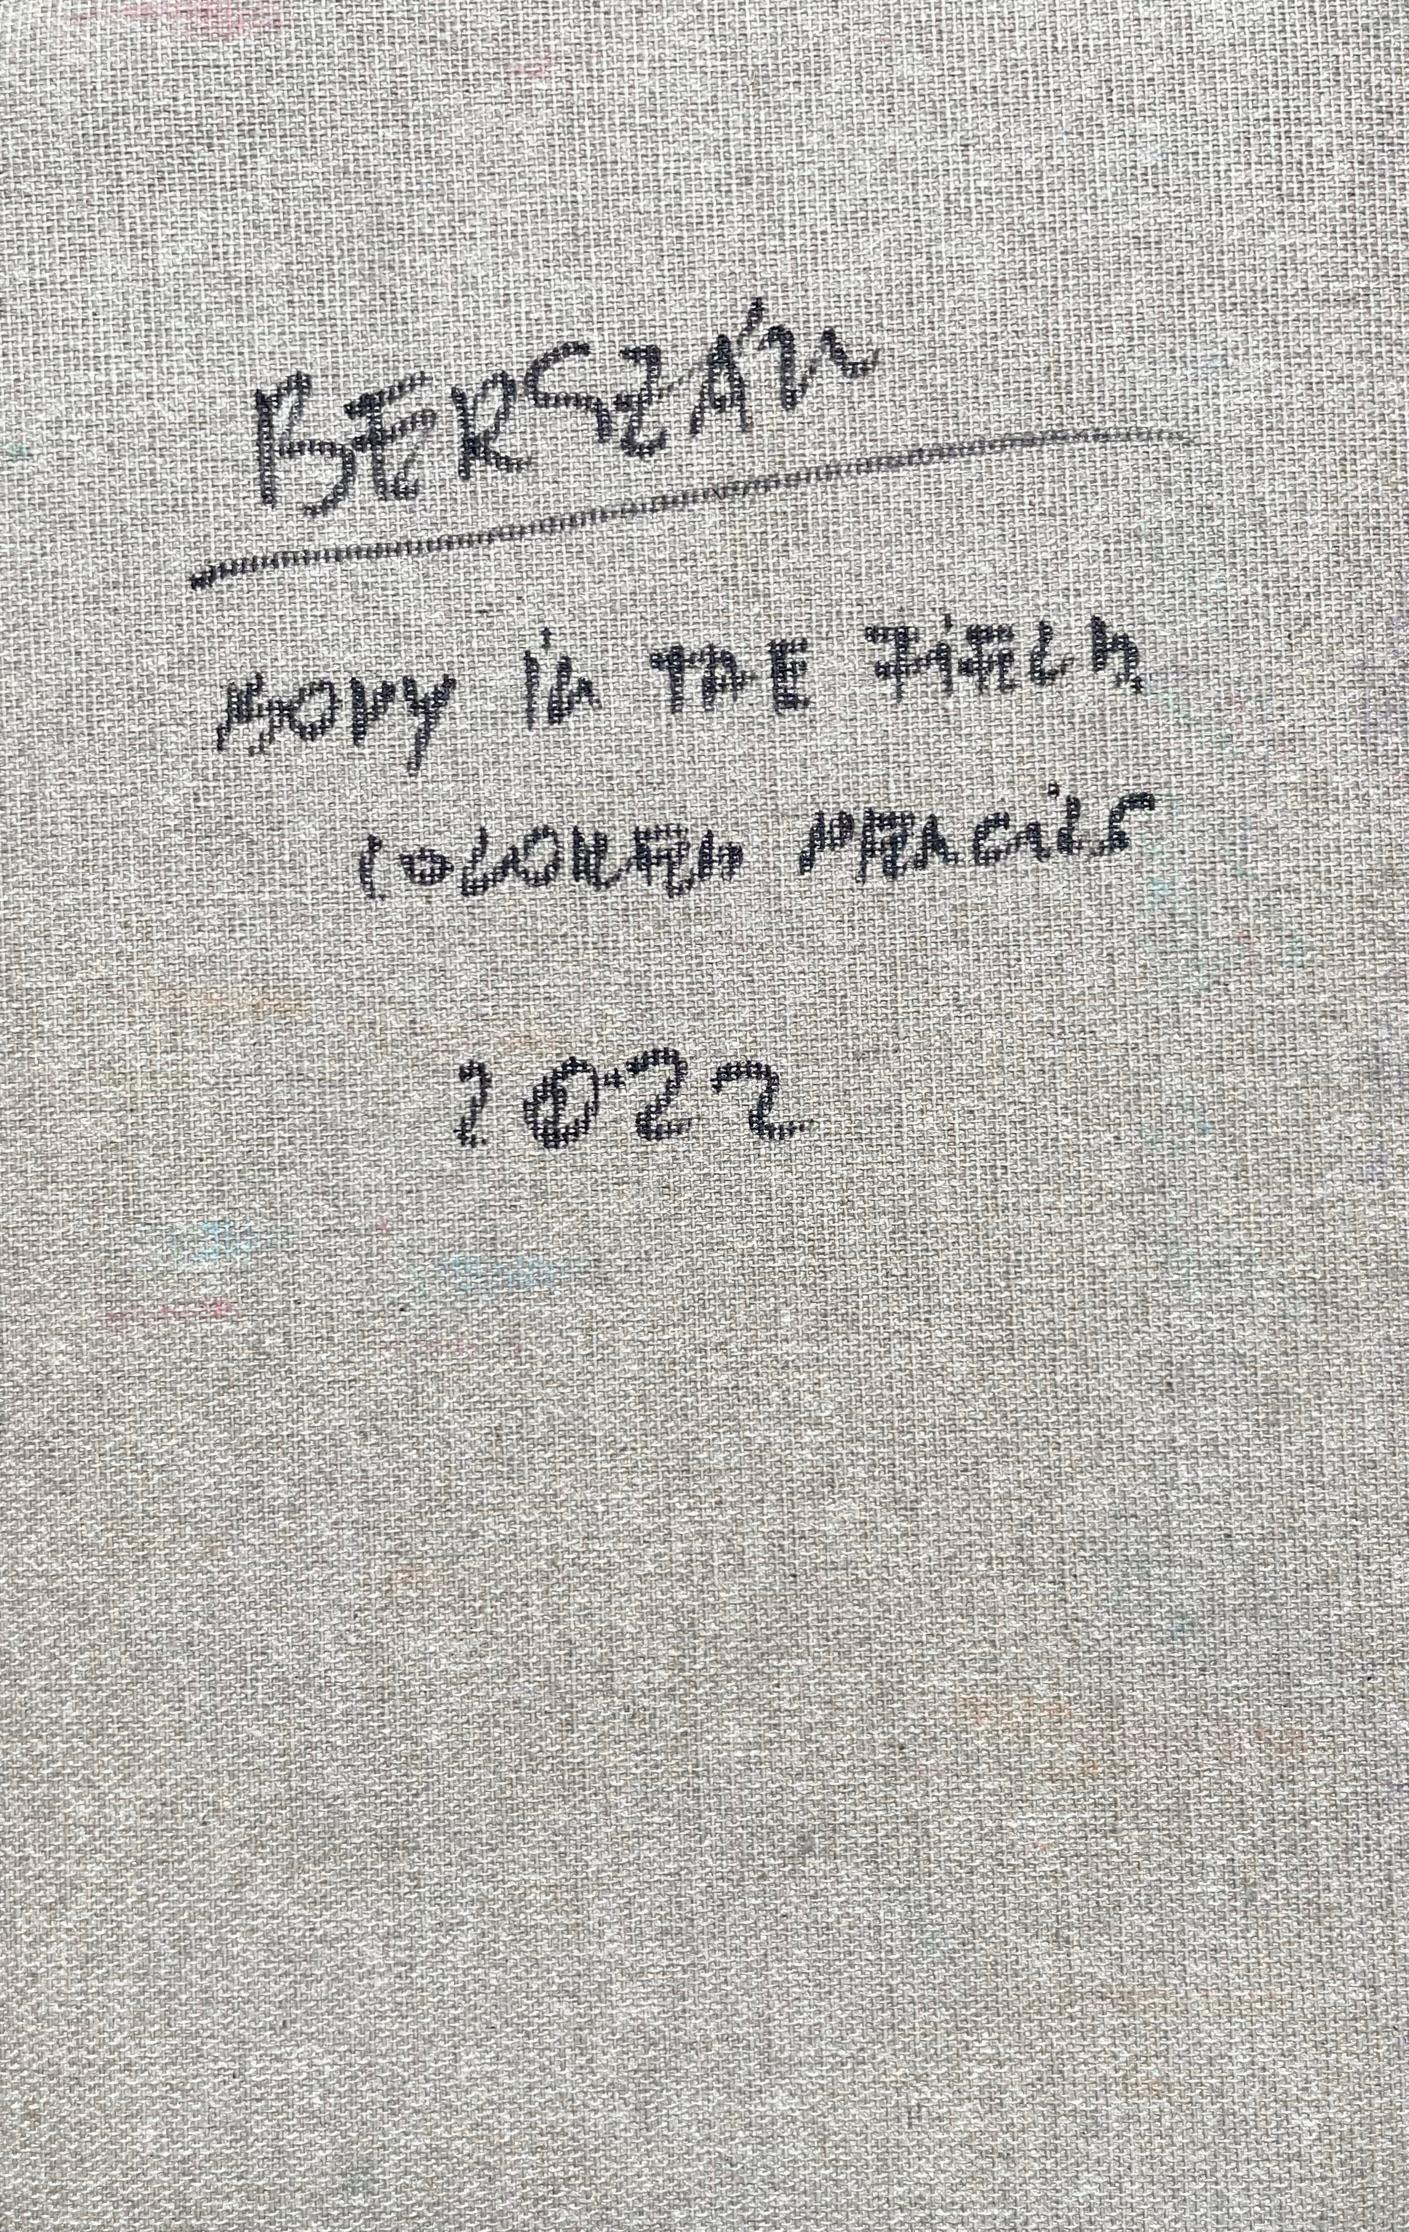 Leiche auf dem Feld #9, 2022
Buntstifte auf Leinwand

25 H x 16 B cm

Signiert auf der Rückseite

Zsolt Berszán verkörpert in seinen Werken die Auflösung des menschlichen Körpers durch das Prisma des Fragments, des zerteilten Körpers und des